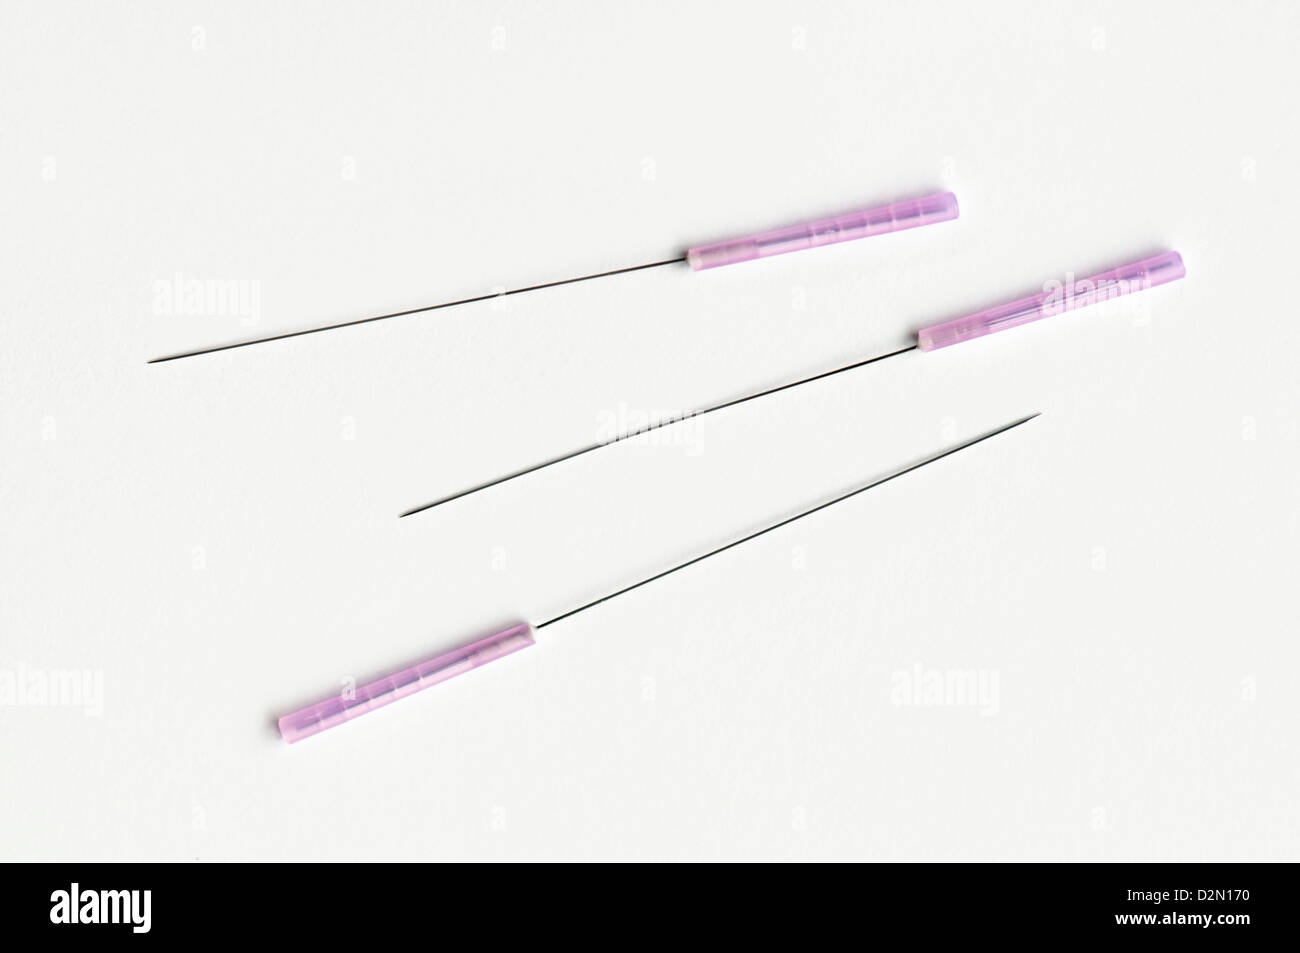 Cerca de tres abras de 1.5 pulgadas de tamaño de agujas de acupuntura tomadas contra un fondo completamente blanco Foto de stock